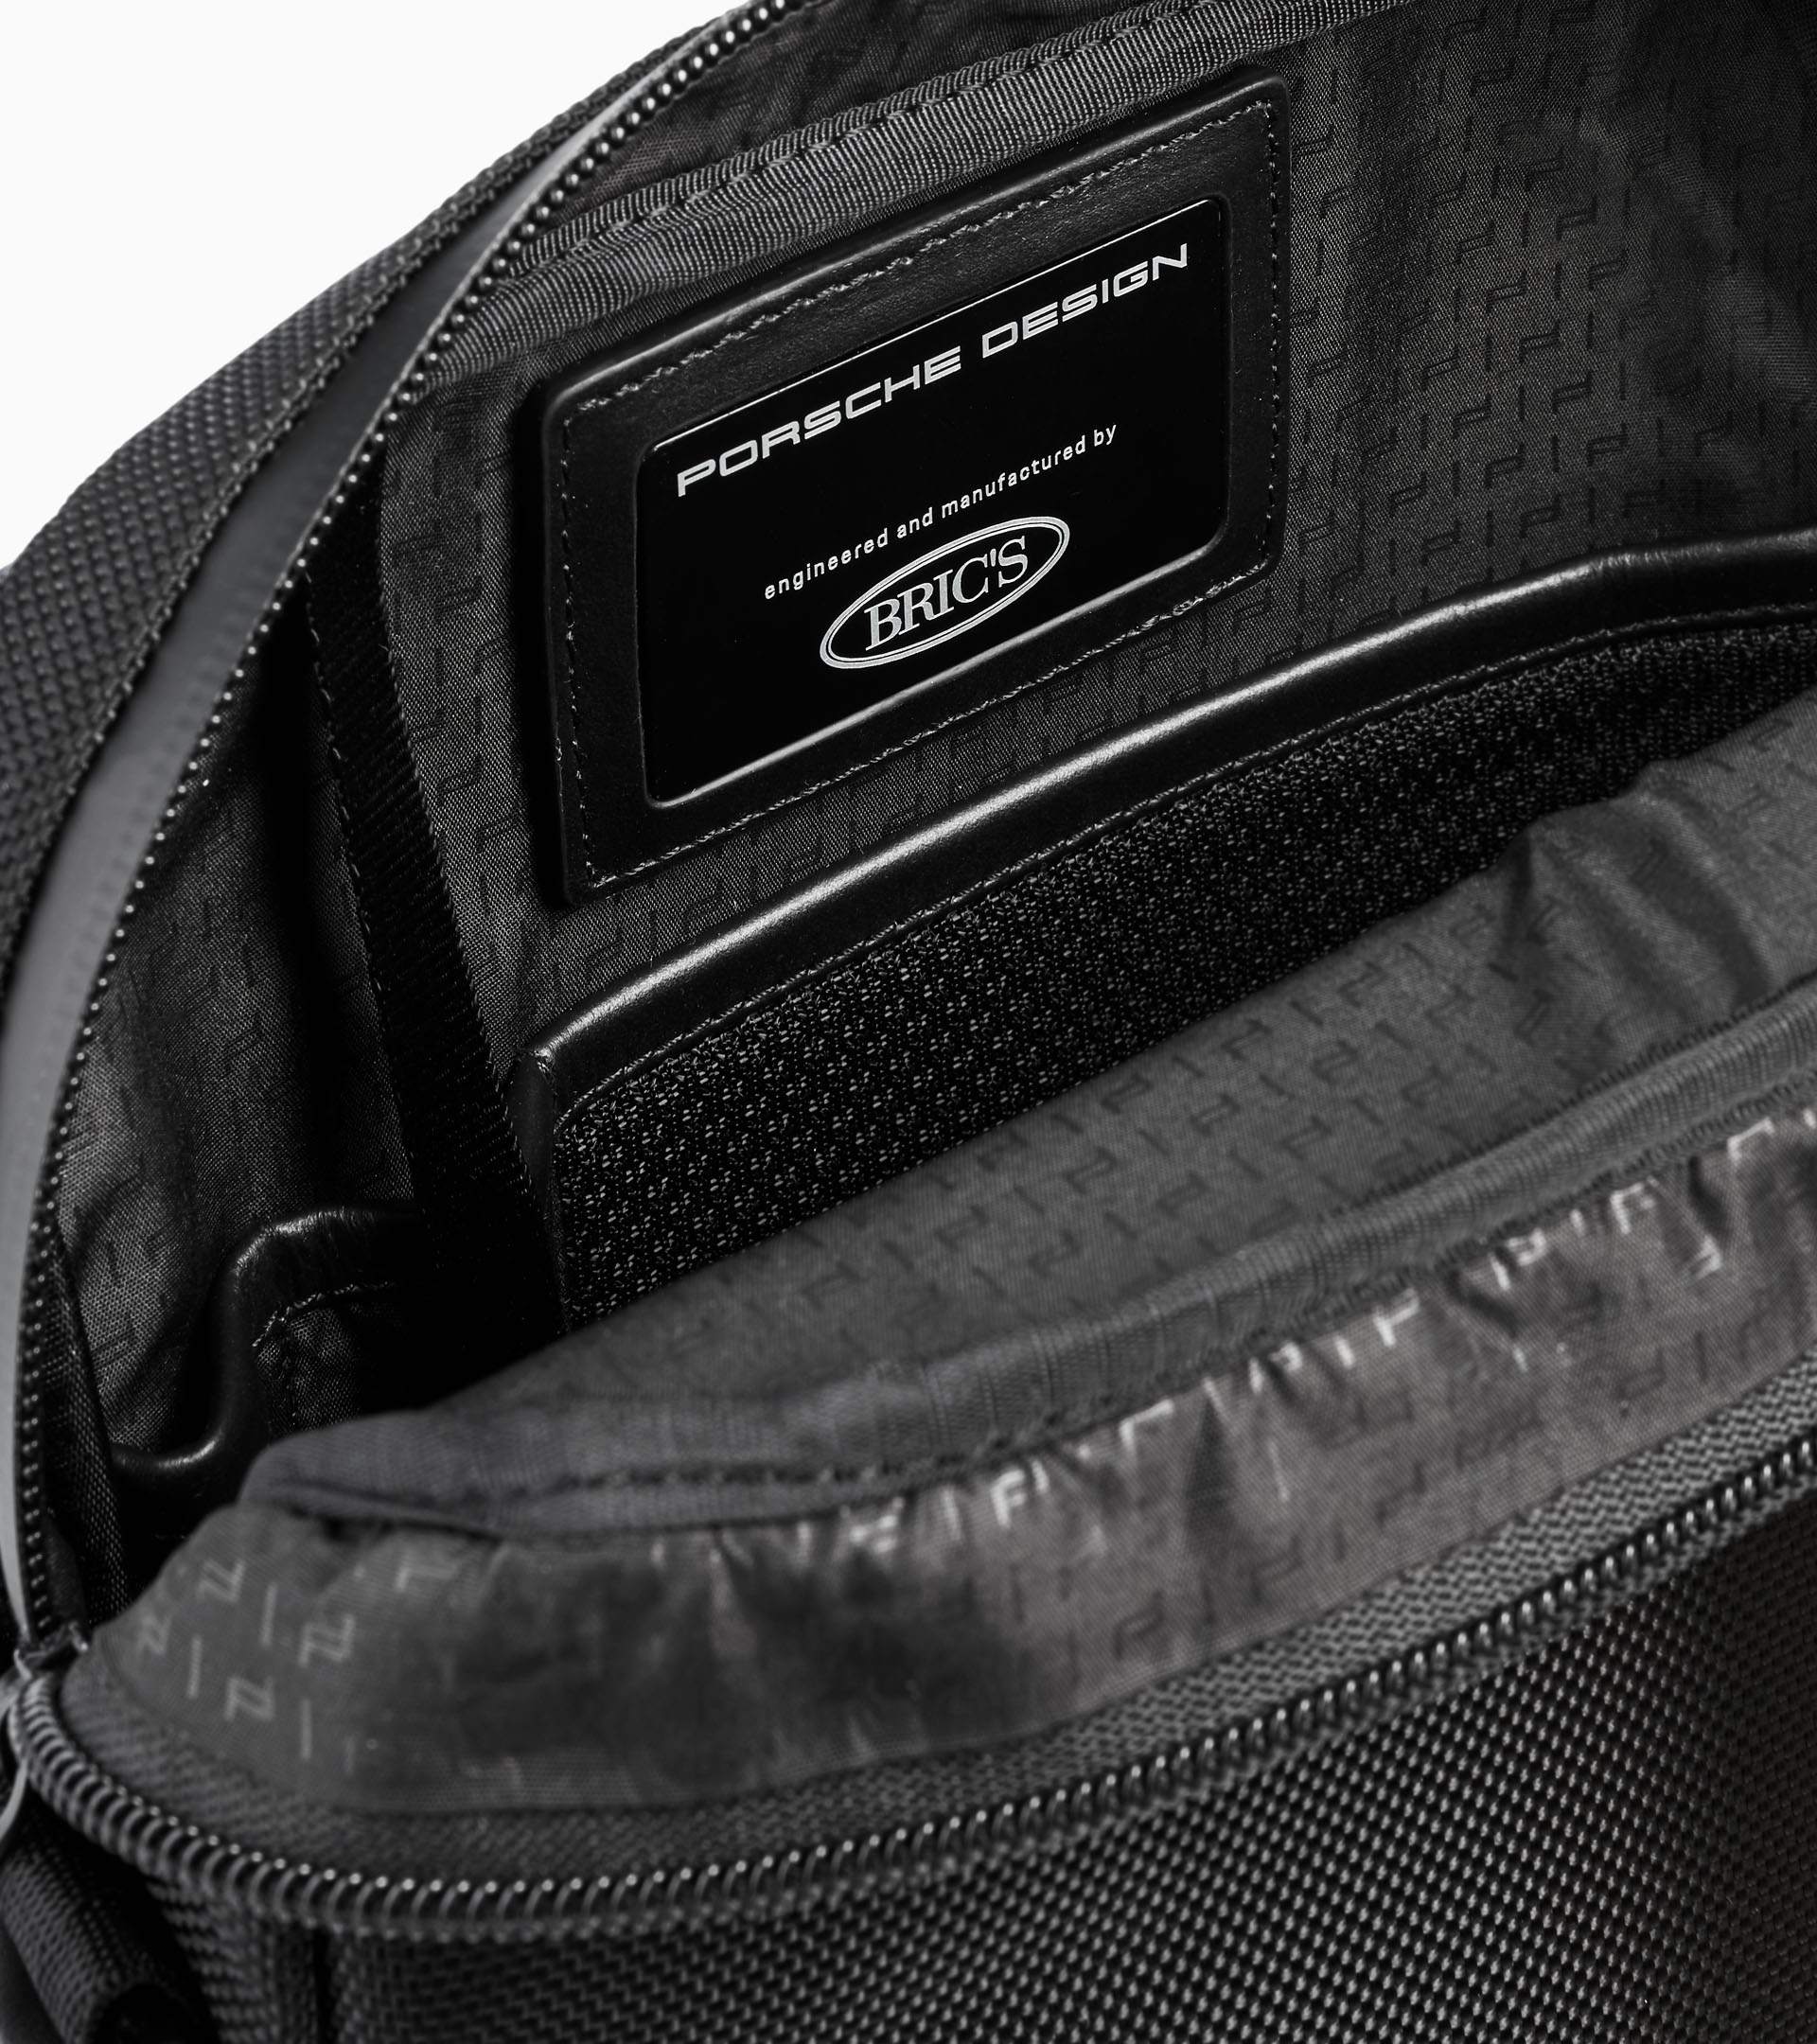 Roadster Leather Shoulderbag XS - Men's Shoulder Bag - Practical &  Comfortable, Porsche Design